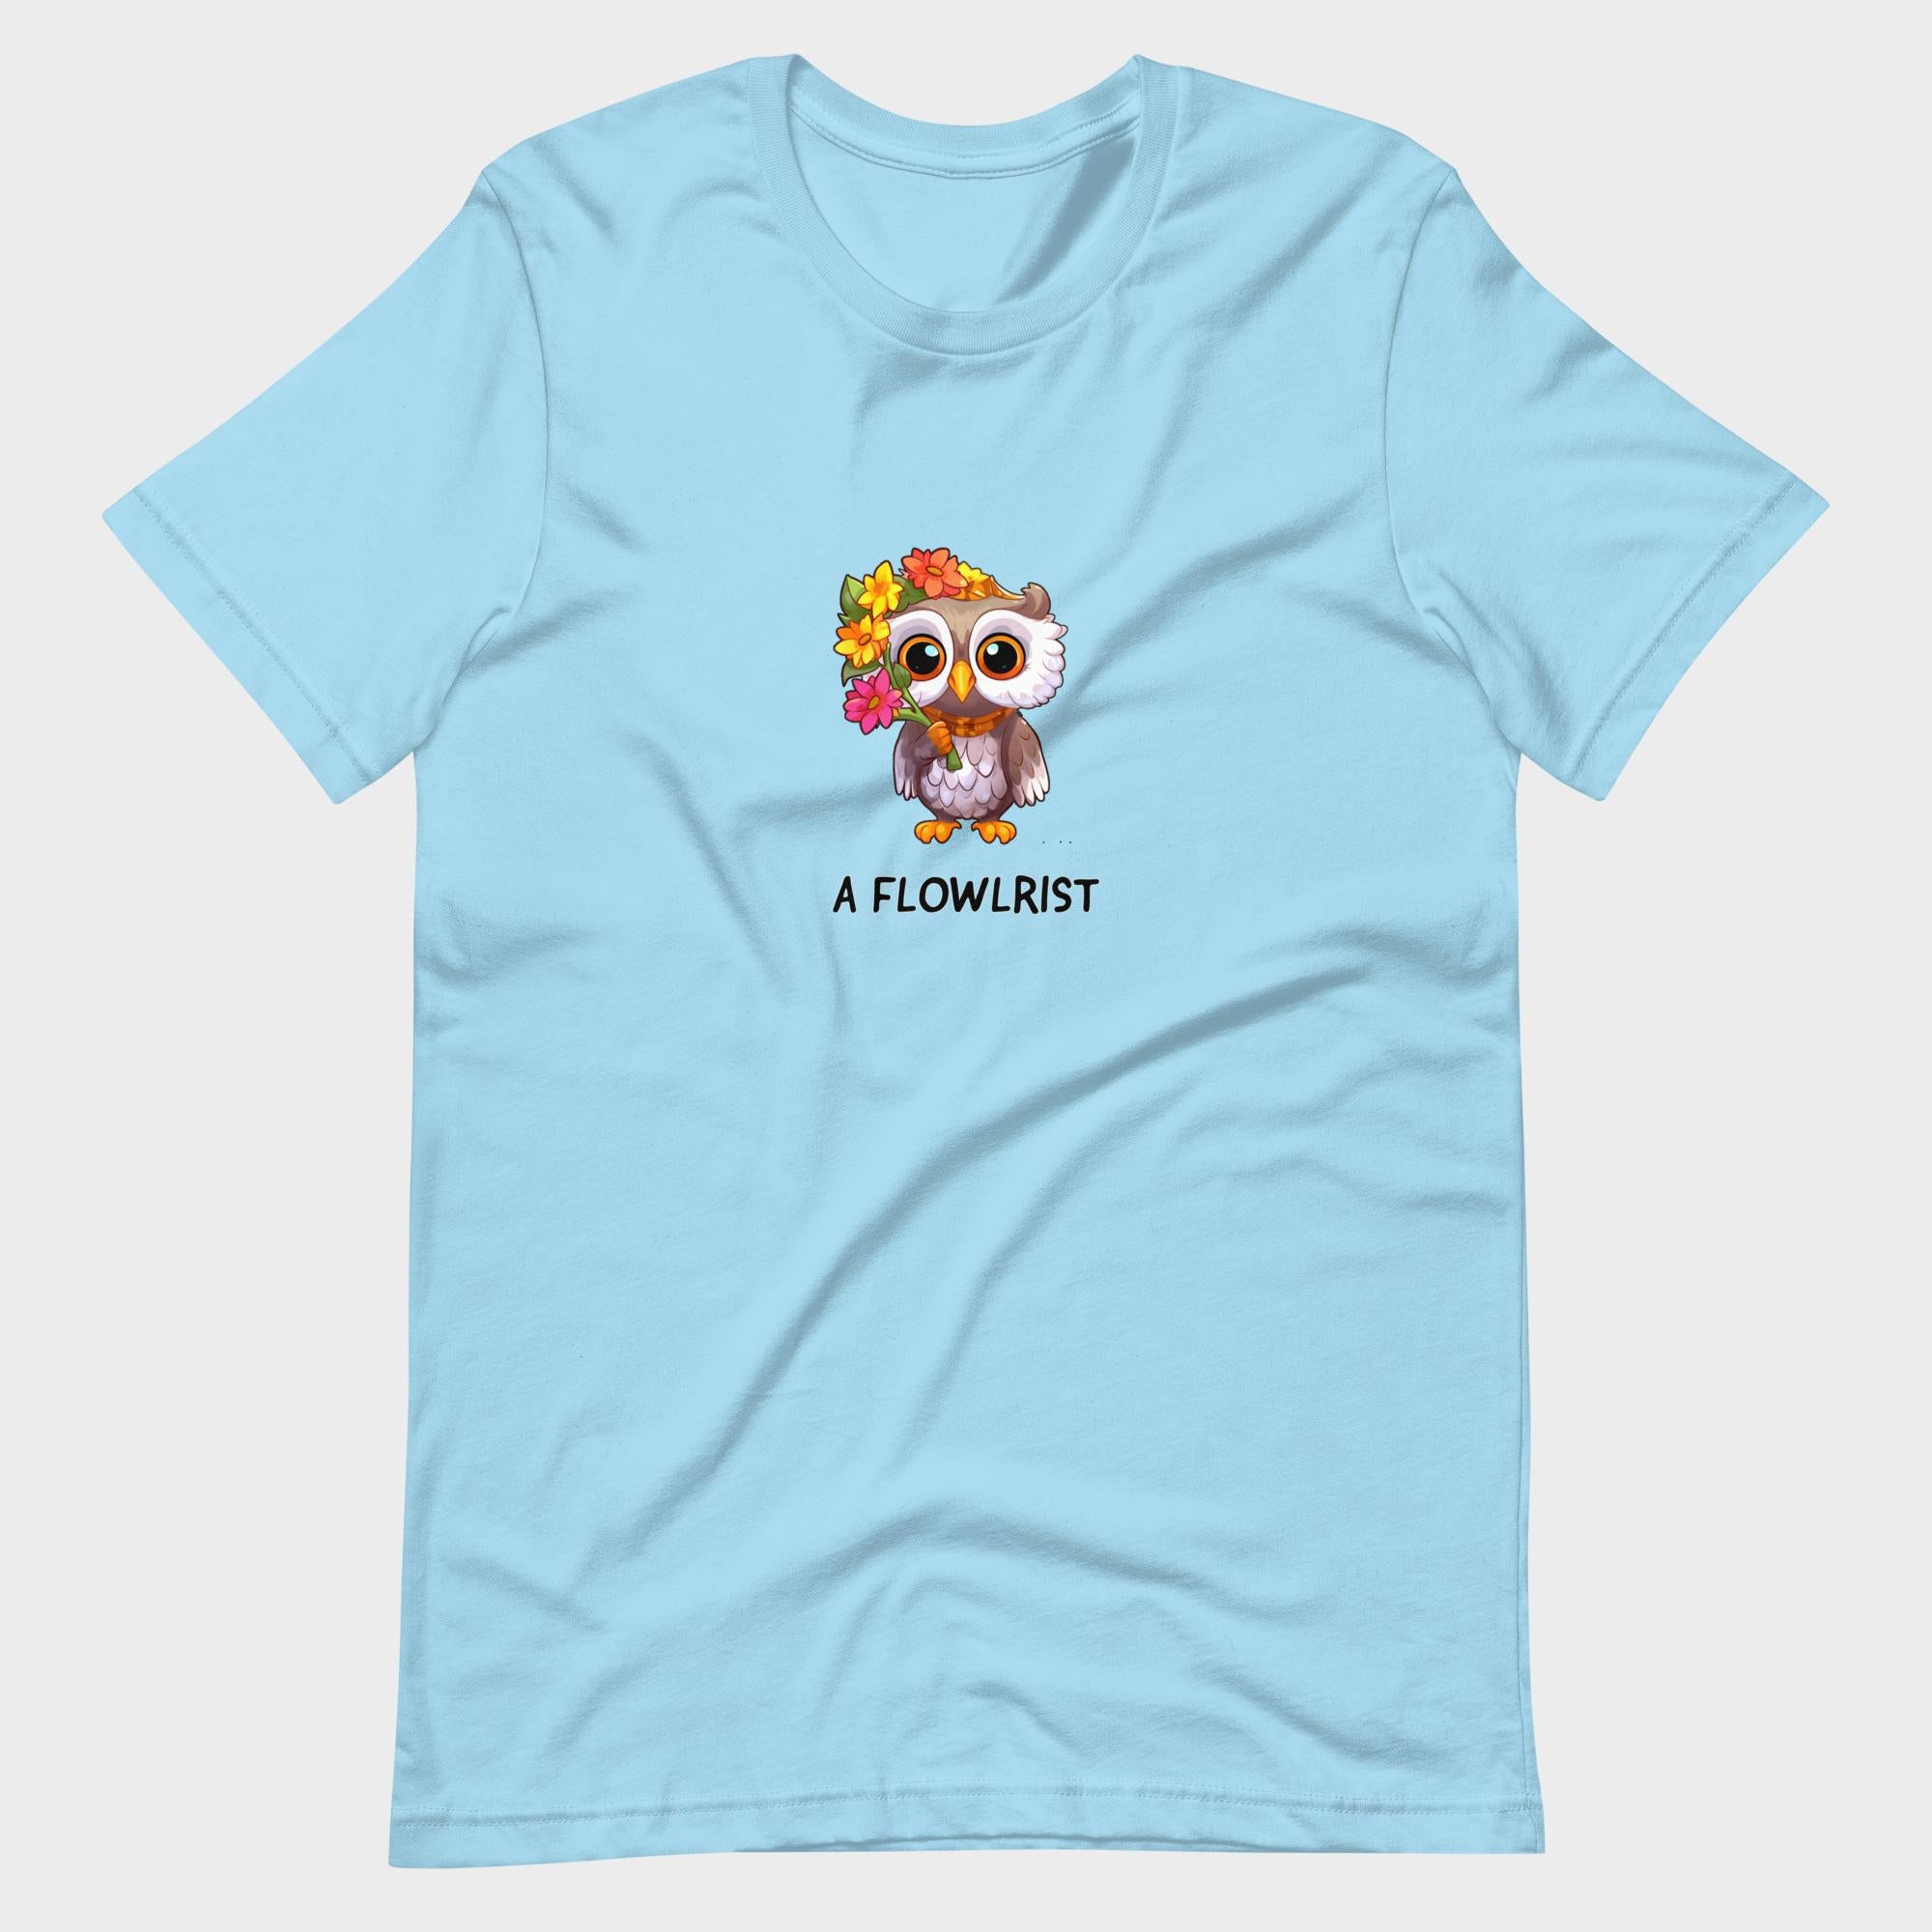 A Flowlrist - T-Shirt